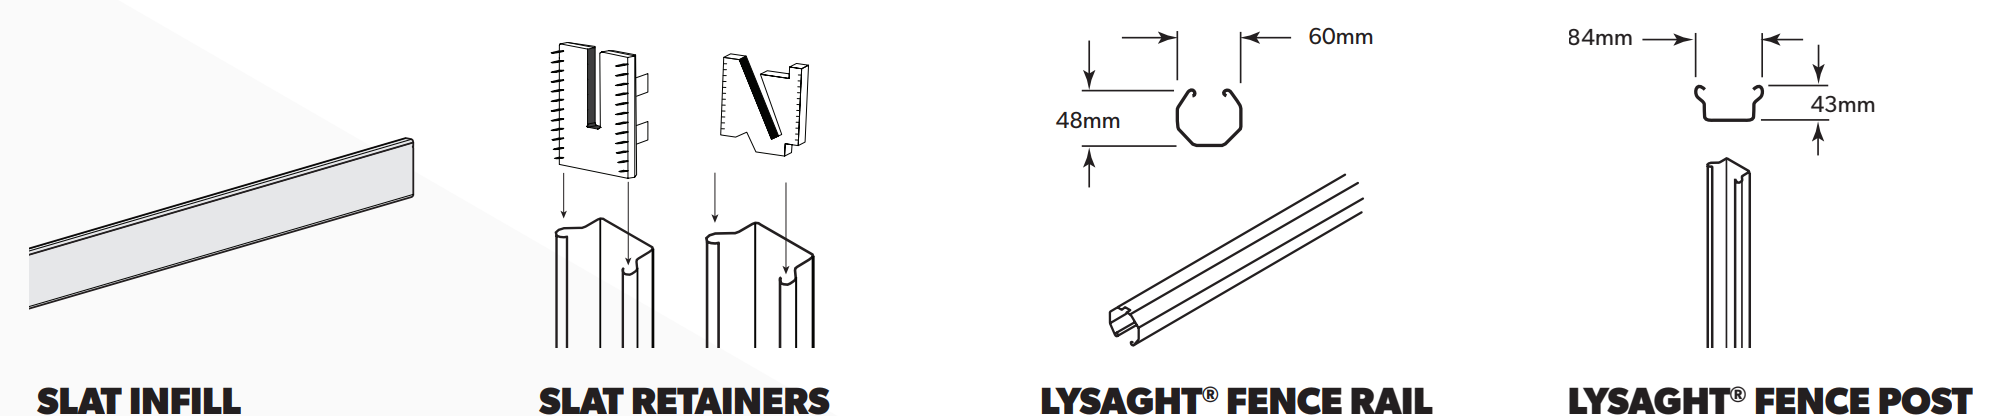 LYSAGHT SLATSCREEN® dimensions